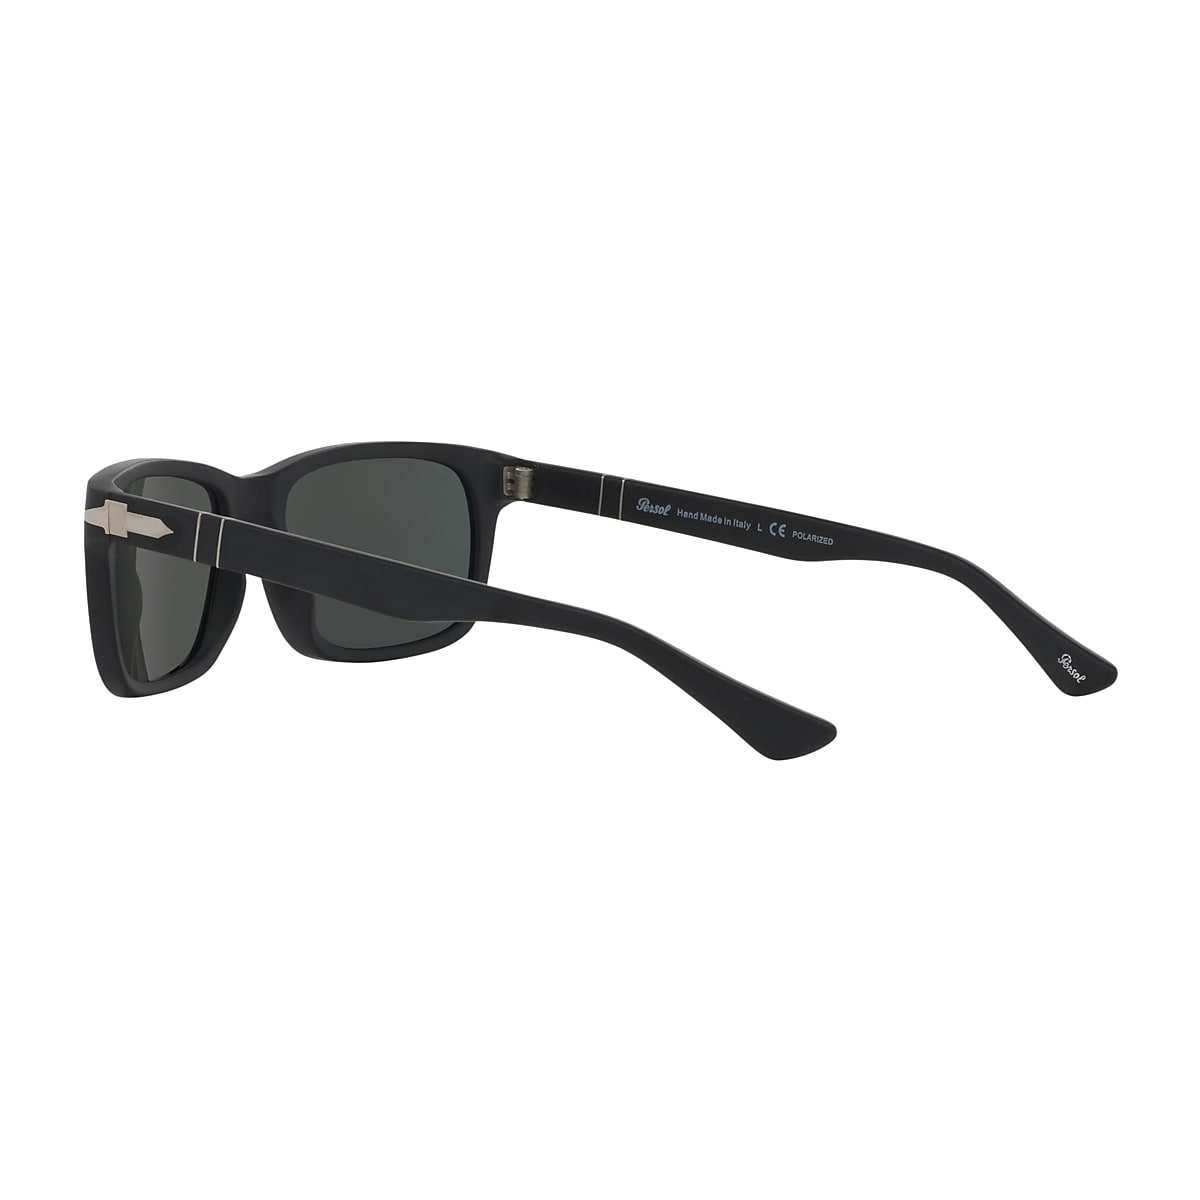 Persol PO3048S Sunglasses in Black | Persol® Persol USA